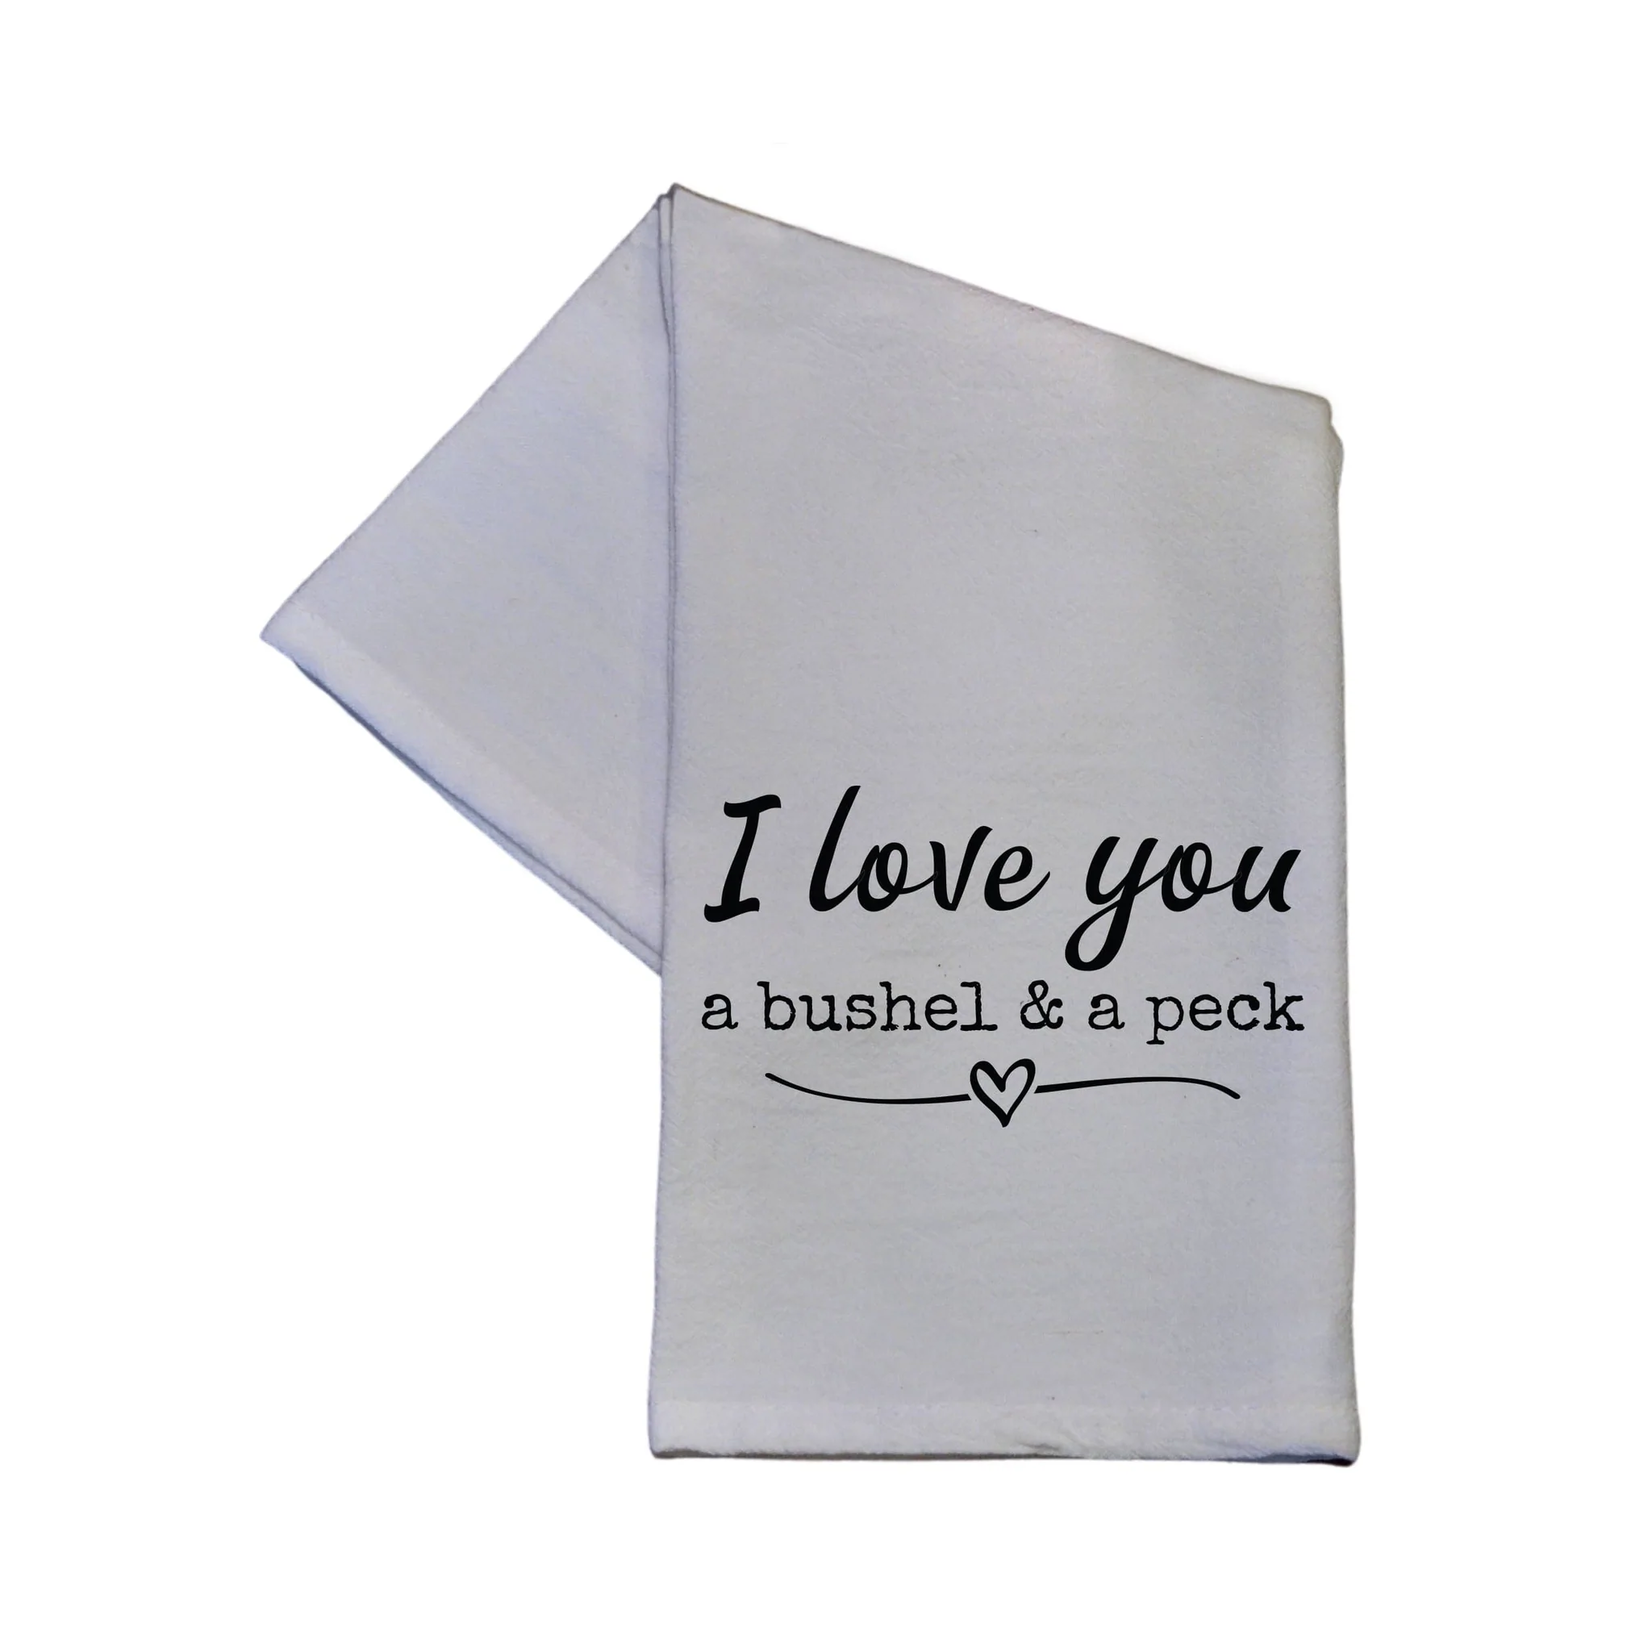 I love you a bushel & peck tea towel